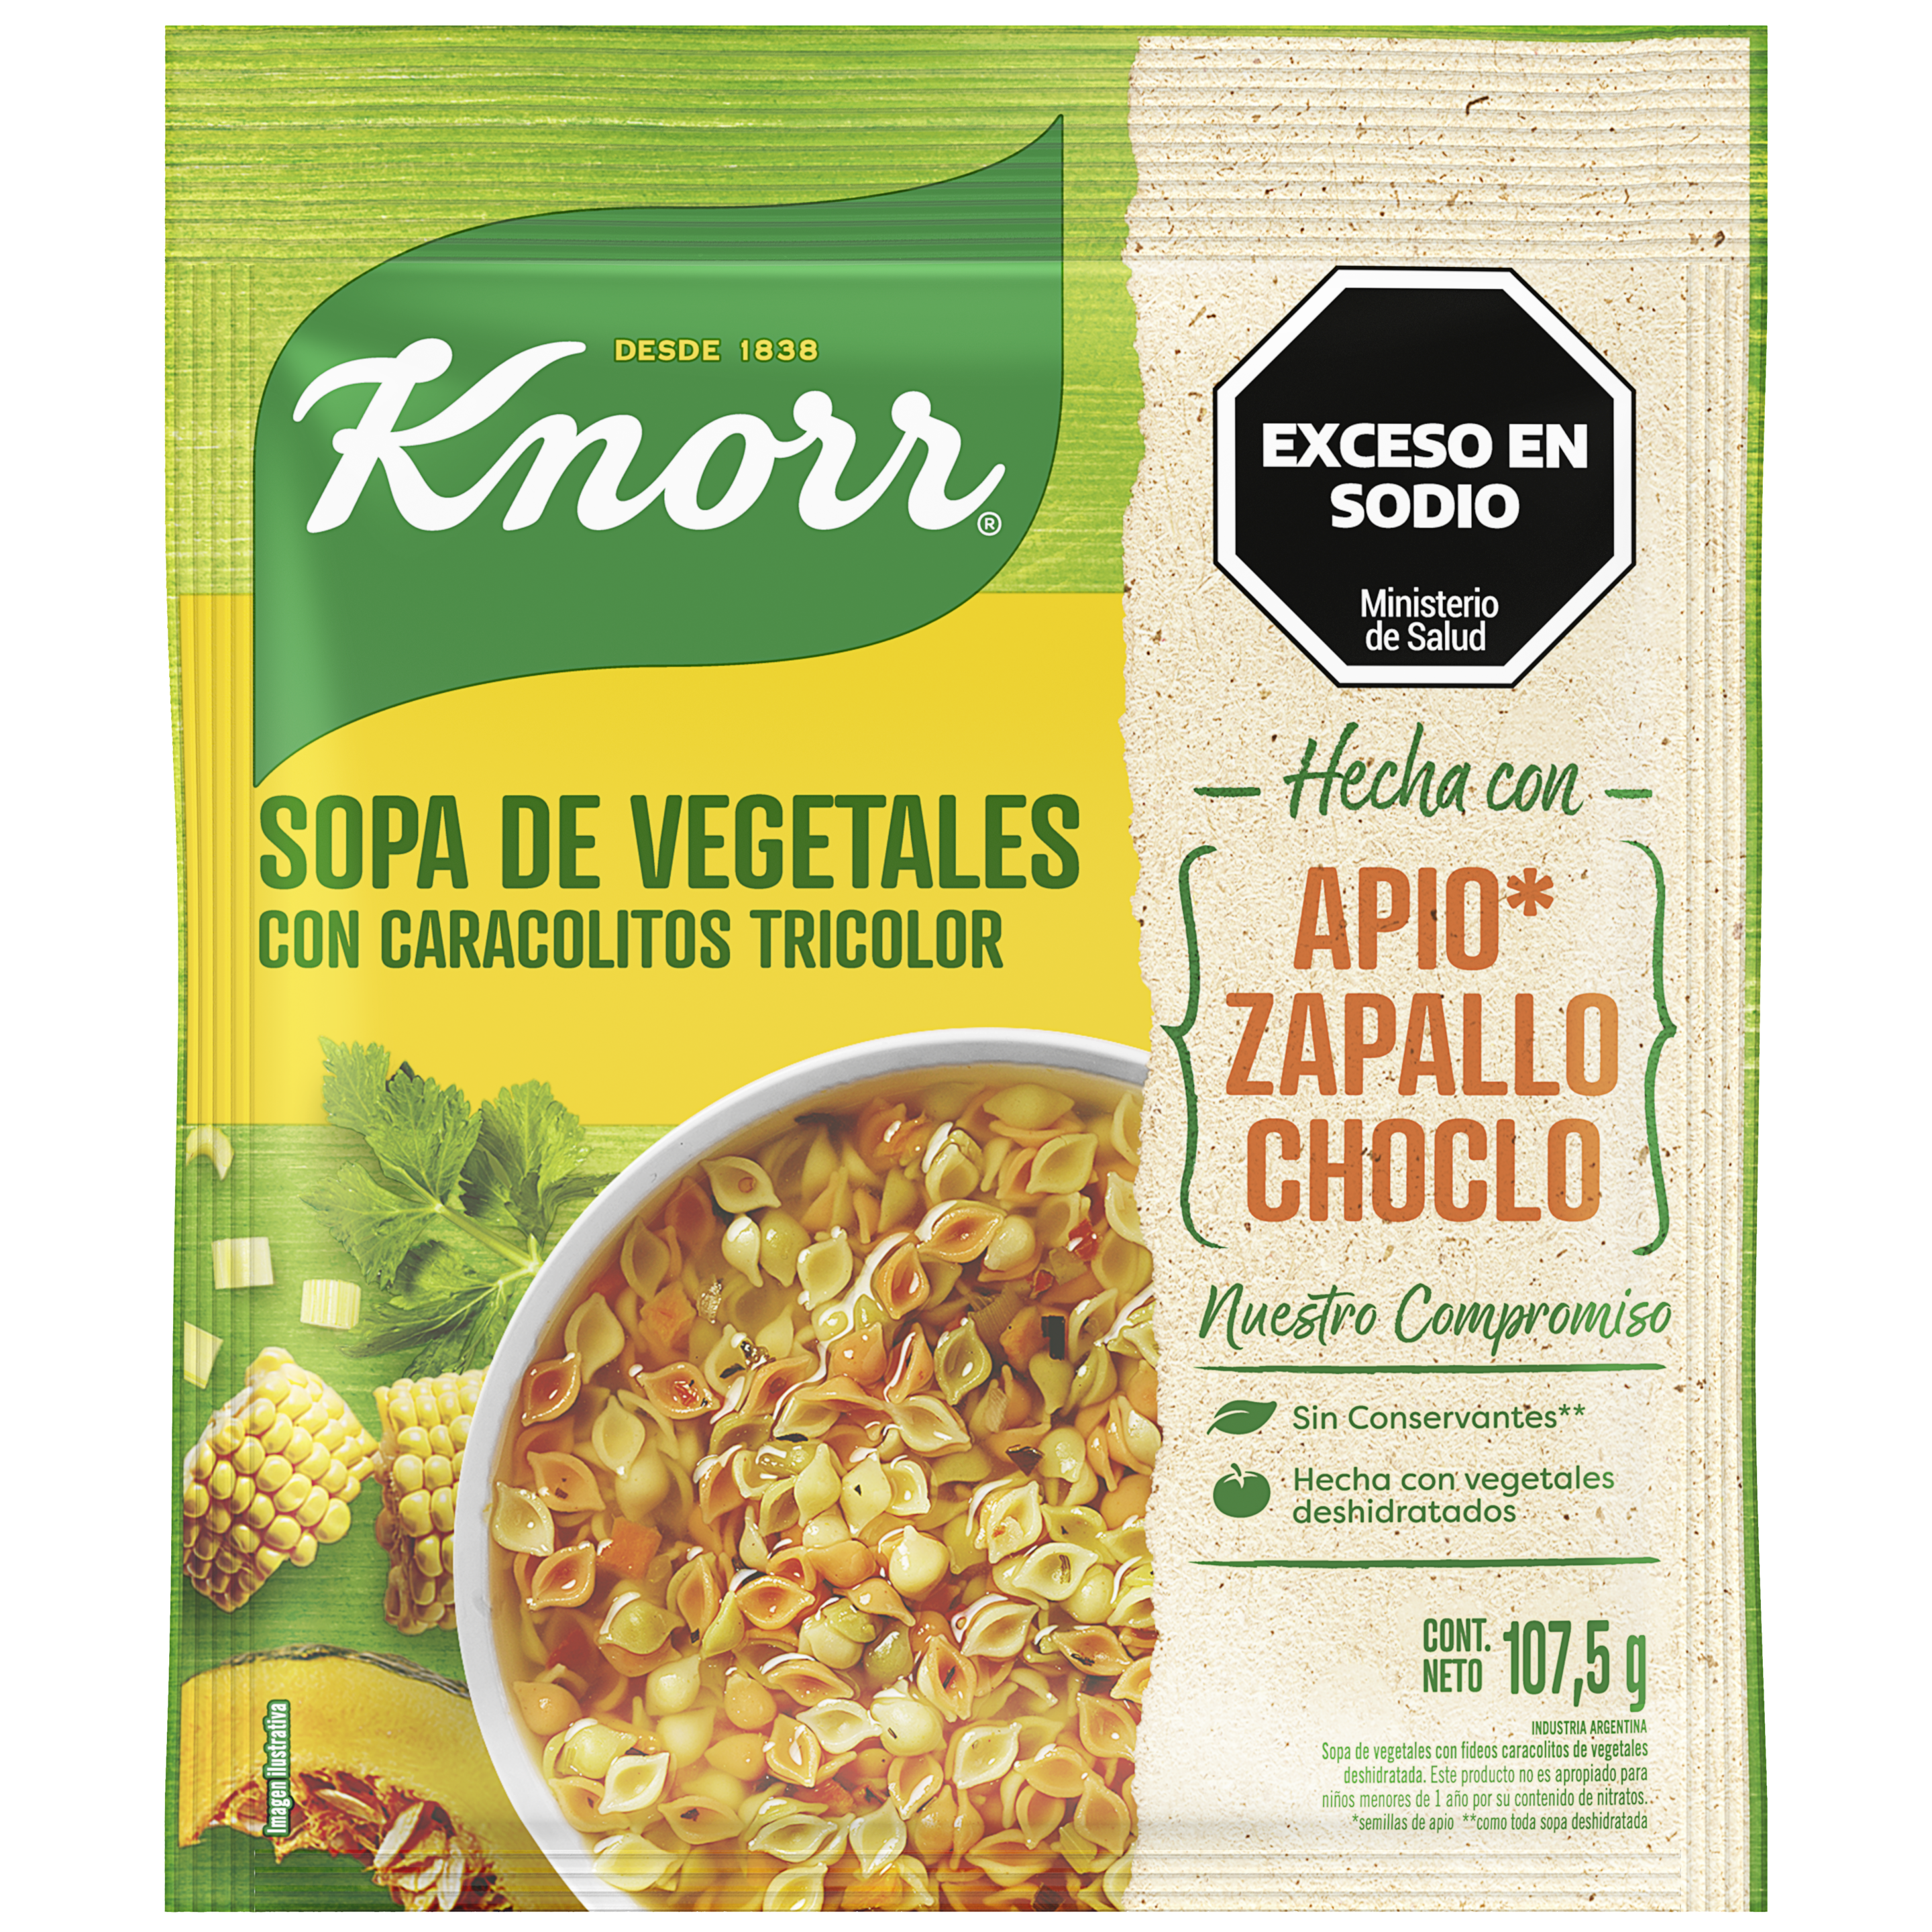 Imagen de envase Sopa de Vegetales con Caracolitos Tricolor Knorr